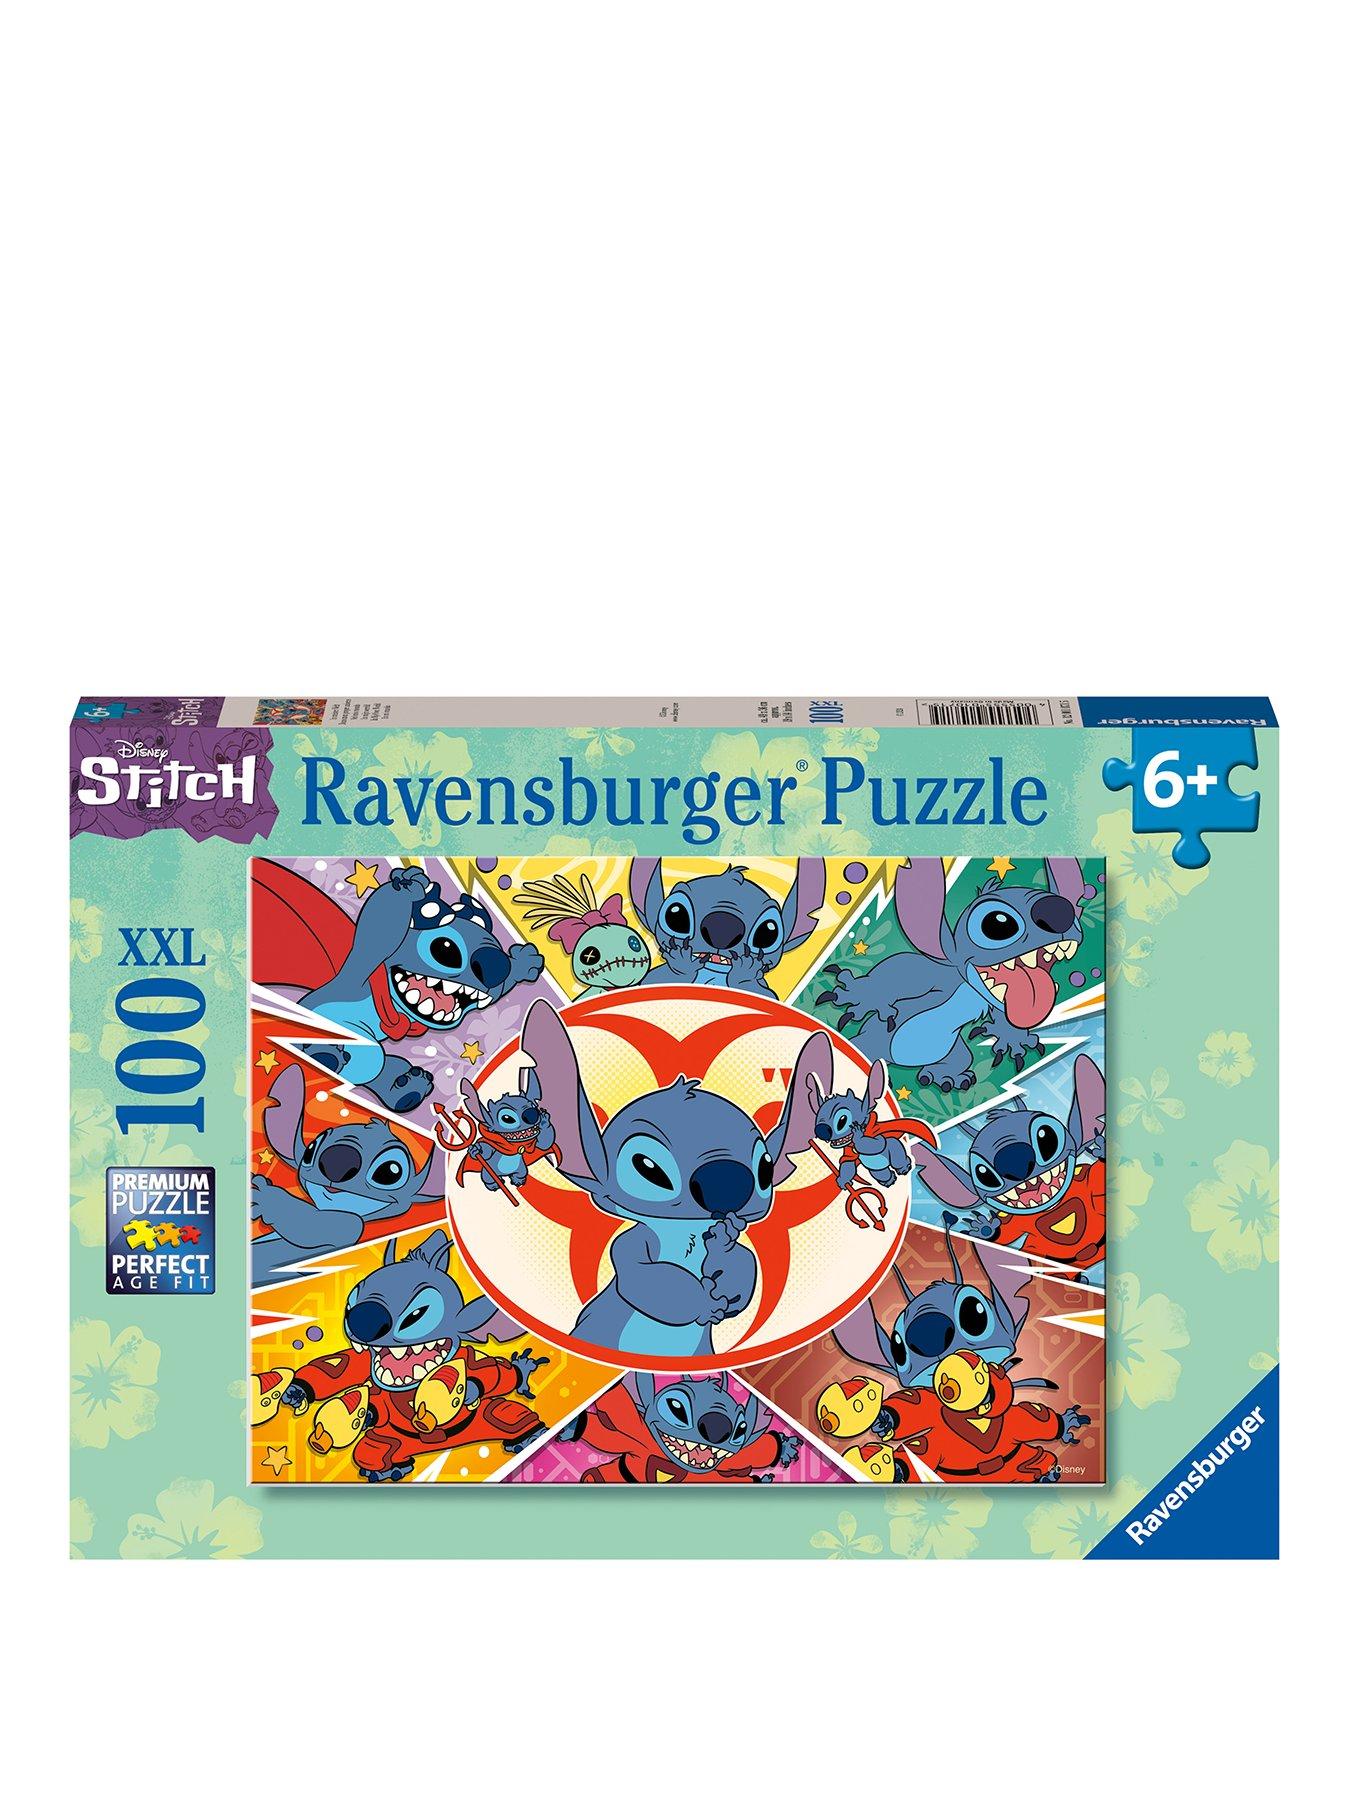 Ravensburger, Ravensburger Puzzles, Ravensburger Jigsaws